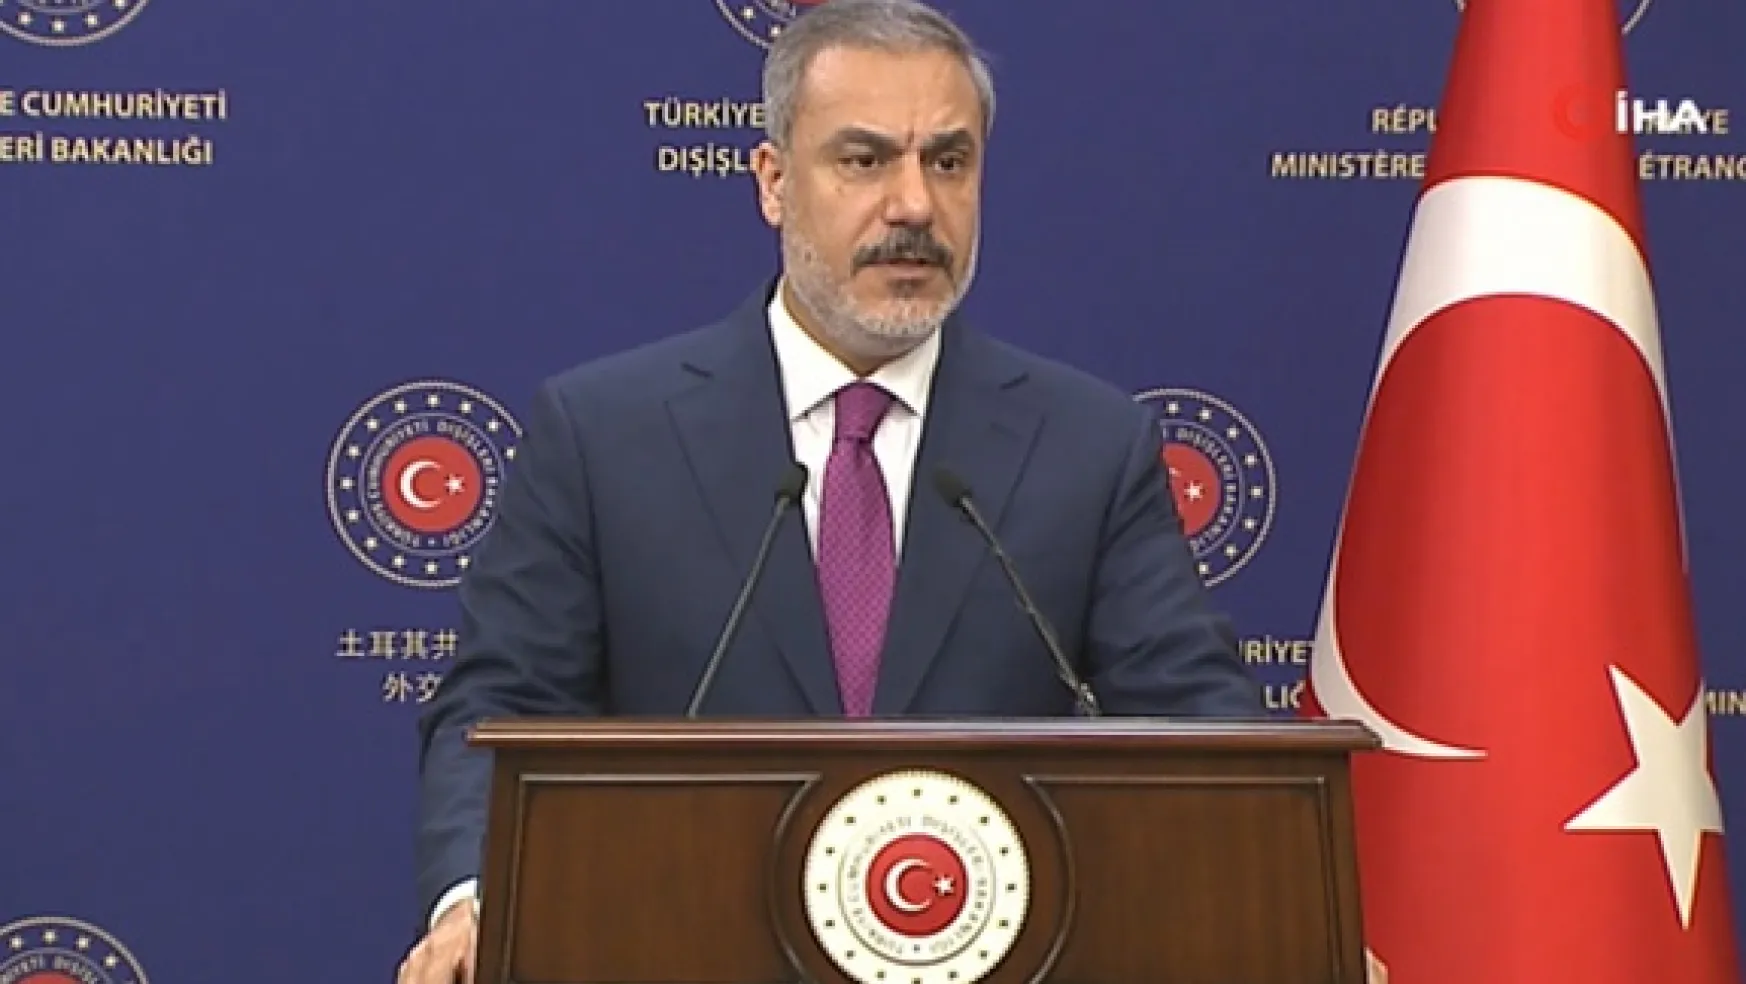 Dışişleri Bakanı Hakan Fidan: 'Yunanistan ile yeni ve olumlu bir döneme girdik' Dedi